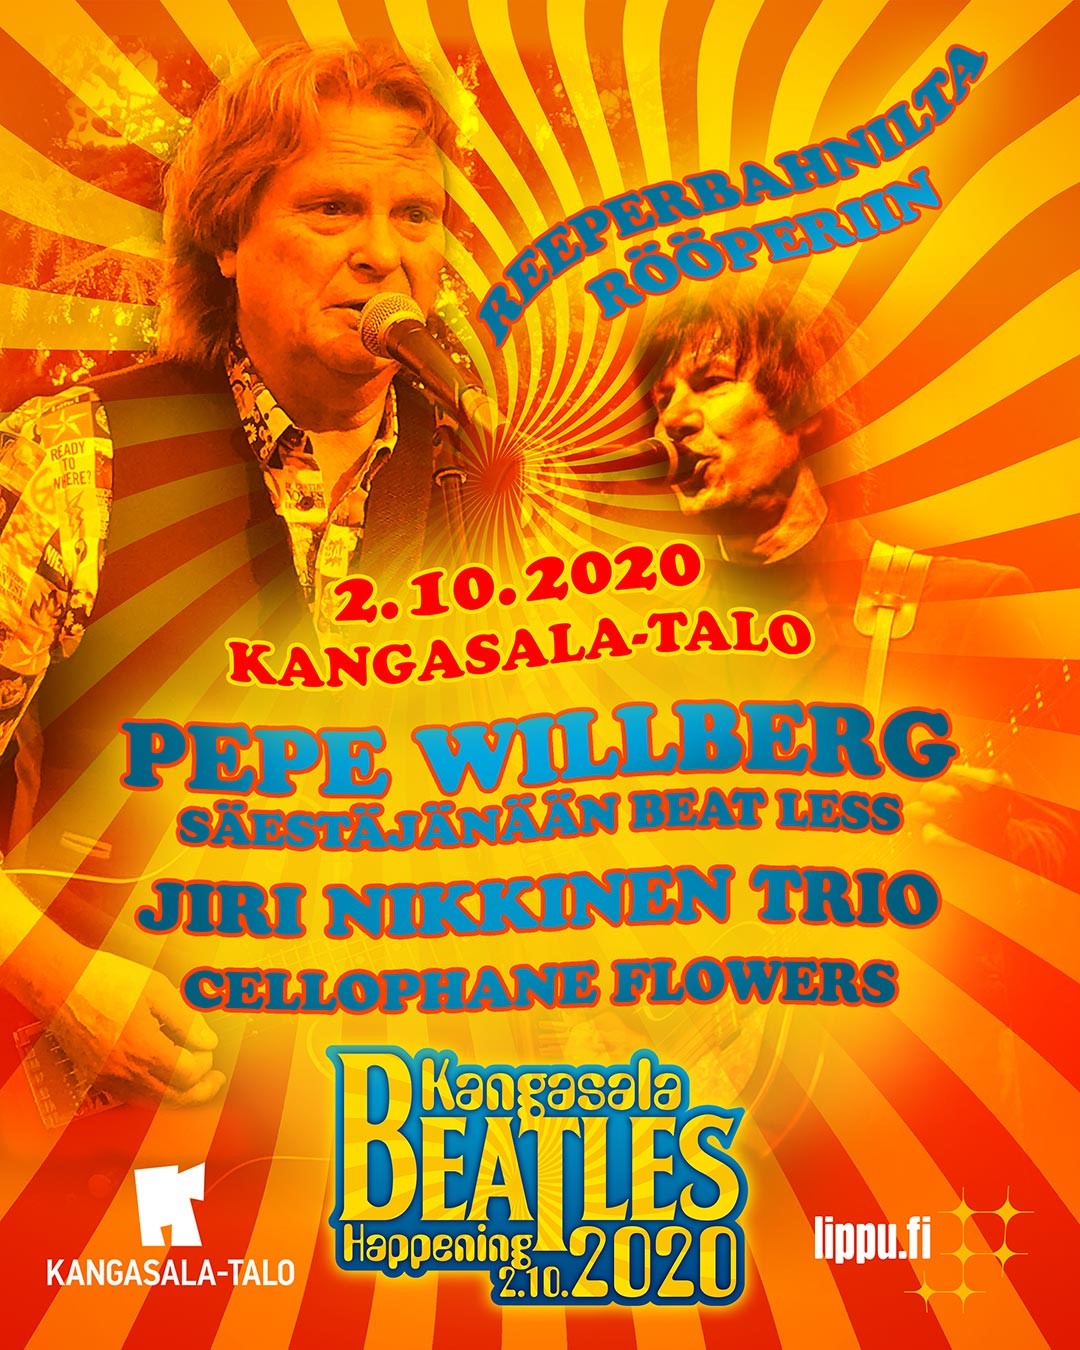 Kangasala Beatles Happening: Reeperbanhnilta Rööperiin -konsertti Kangasala-talossa 2.10.2020.